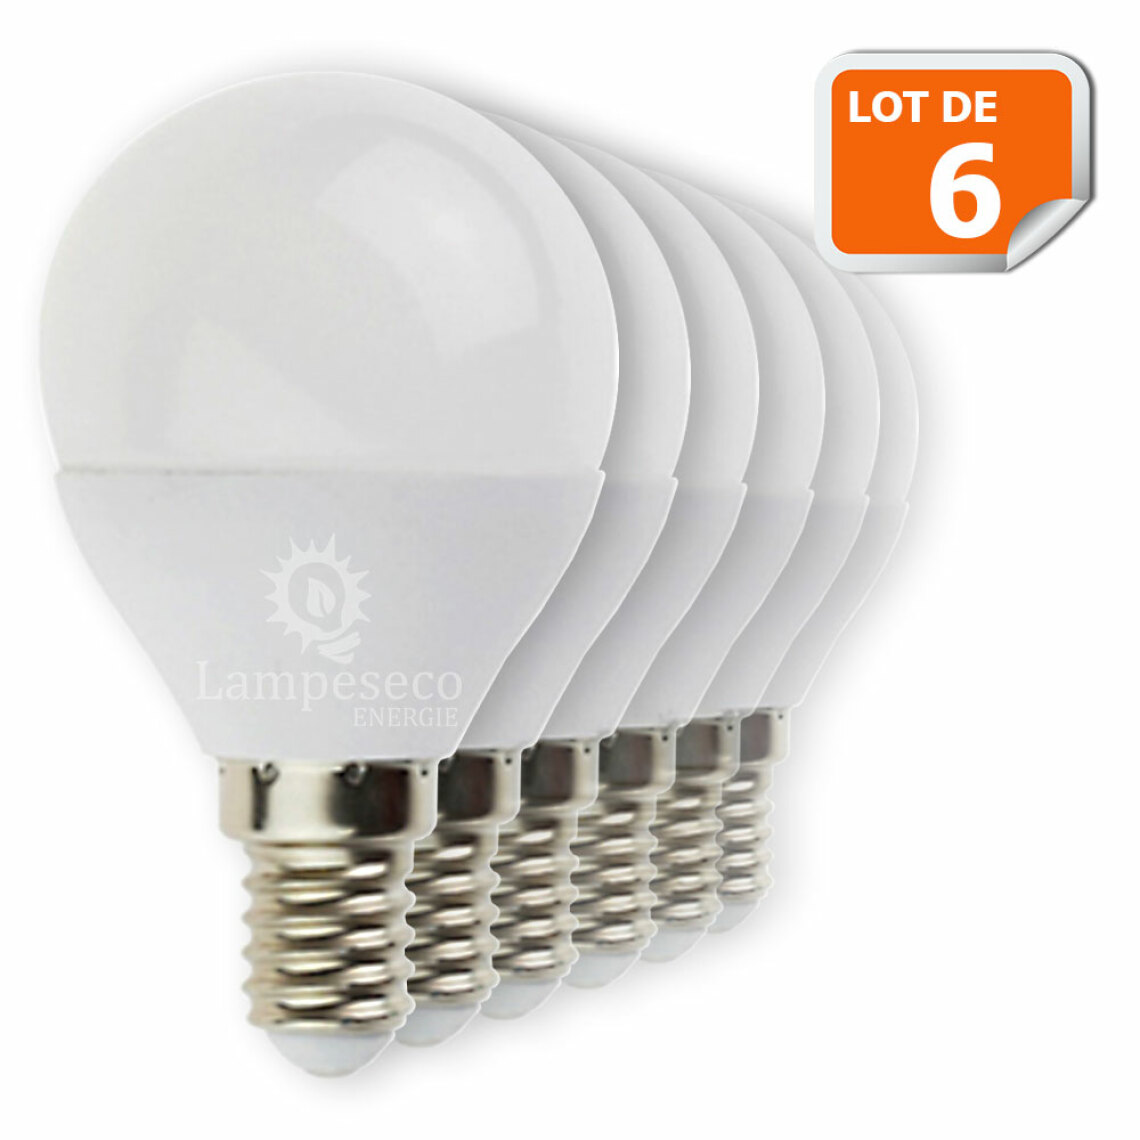 Lampesecoenergie - Lot de 6 Ampoules E14 Mini Globe 6W eq. 40W 480 lumens Blanc neutre 4000K - Ampoules LED